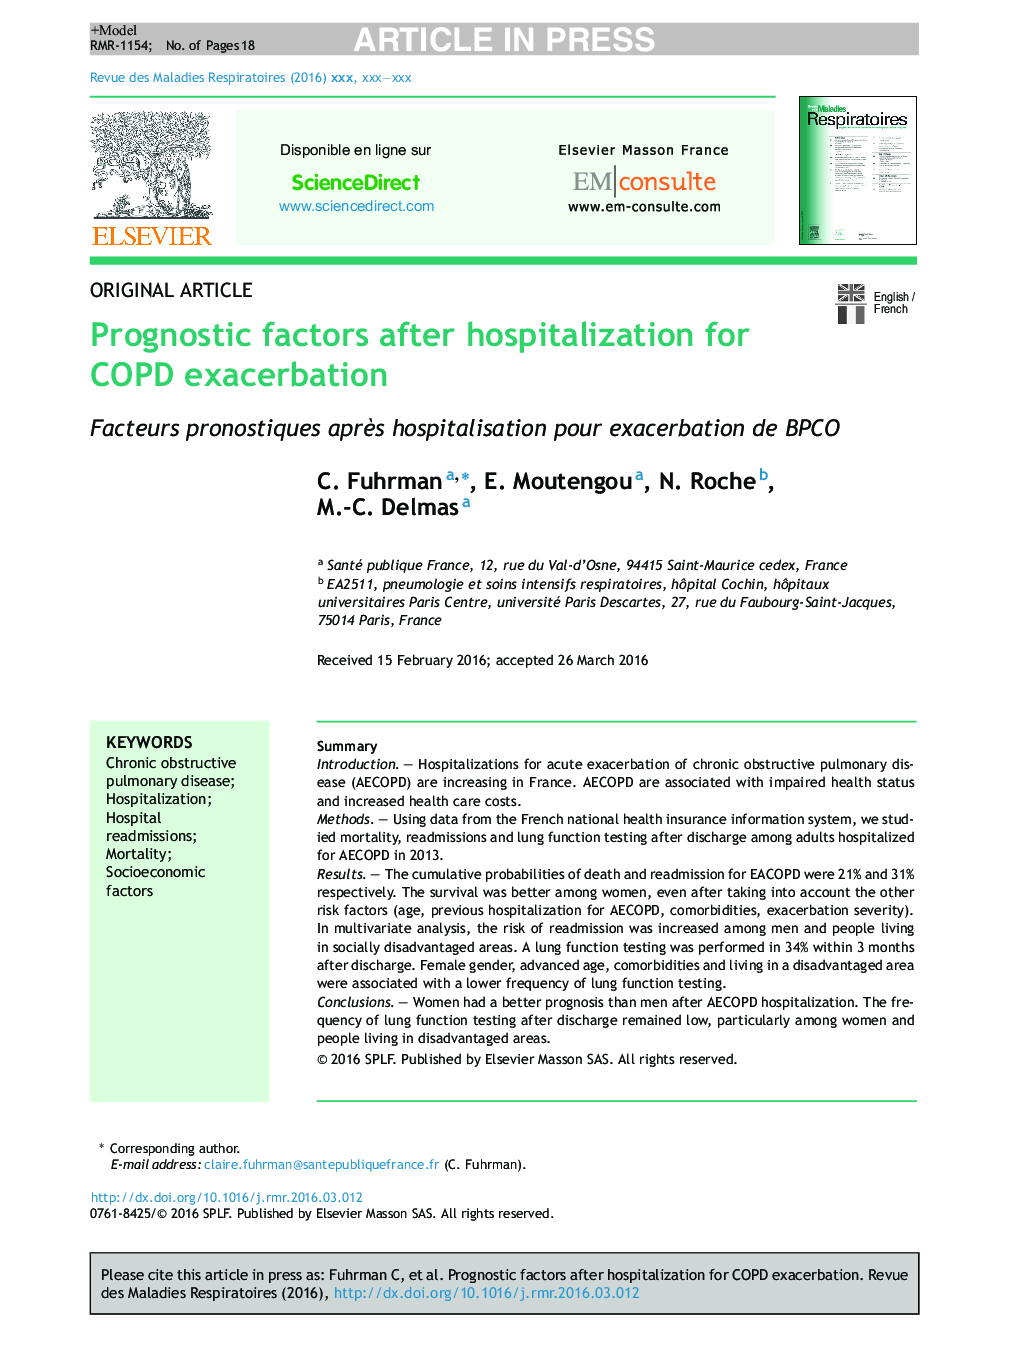 Prognostic factors after hospitalization for COPD exacerbation